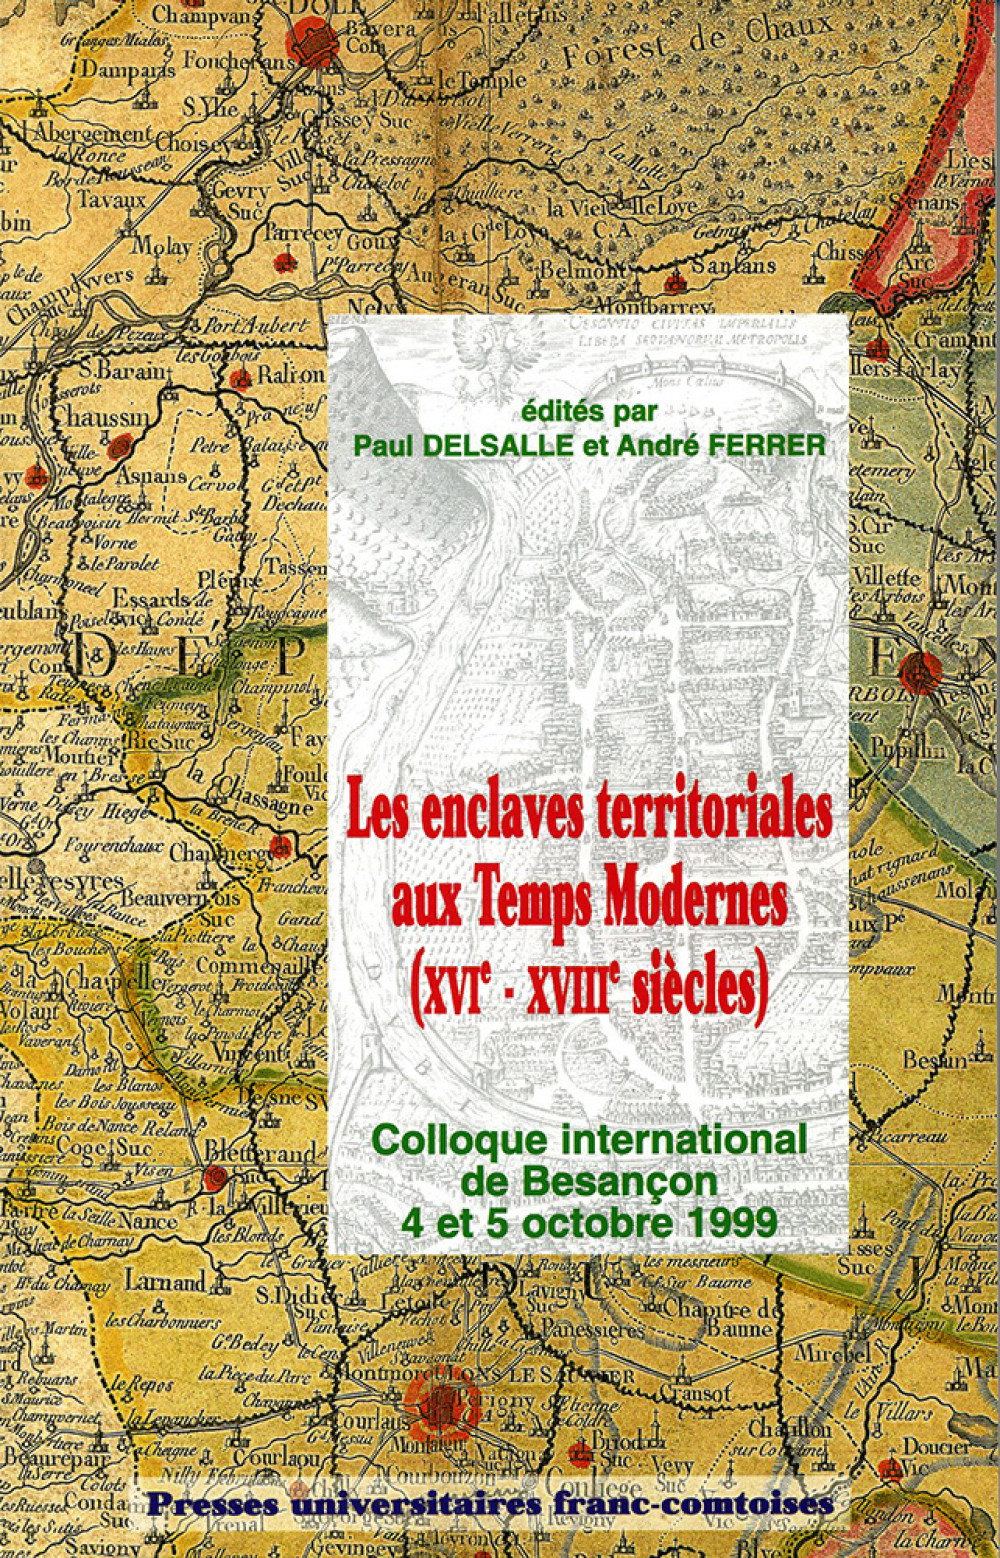 Les enclaves territoriales aux Temps Modernes (XVIe-XVIIIe siècles)